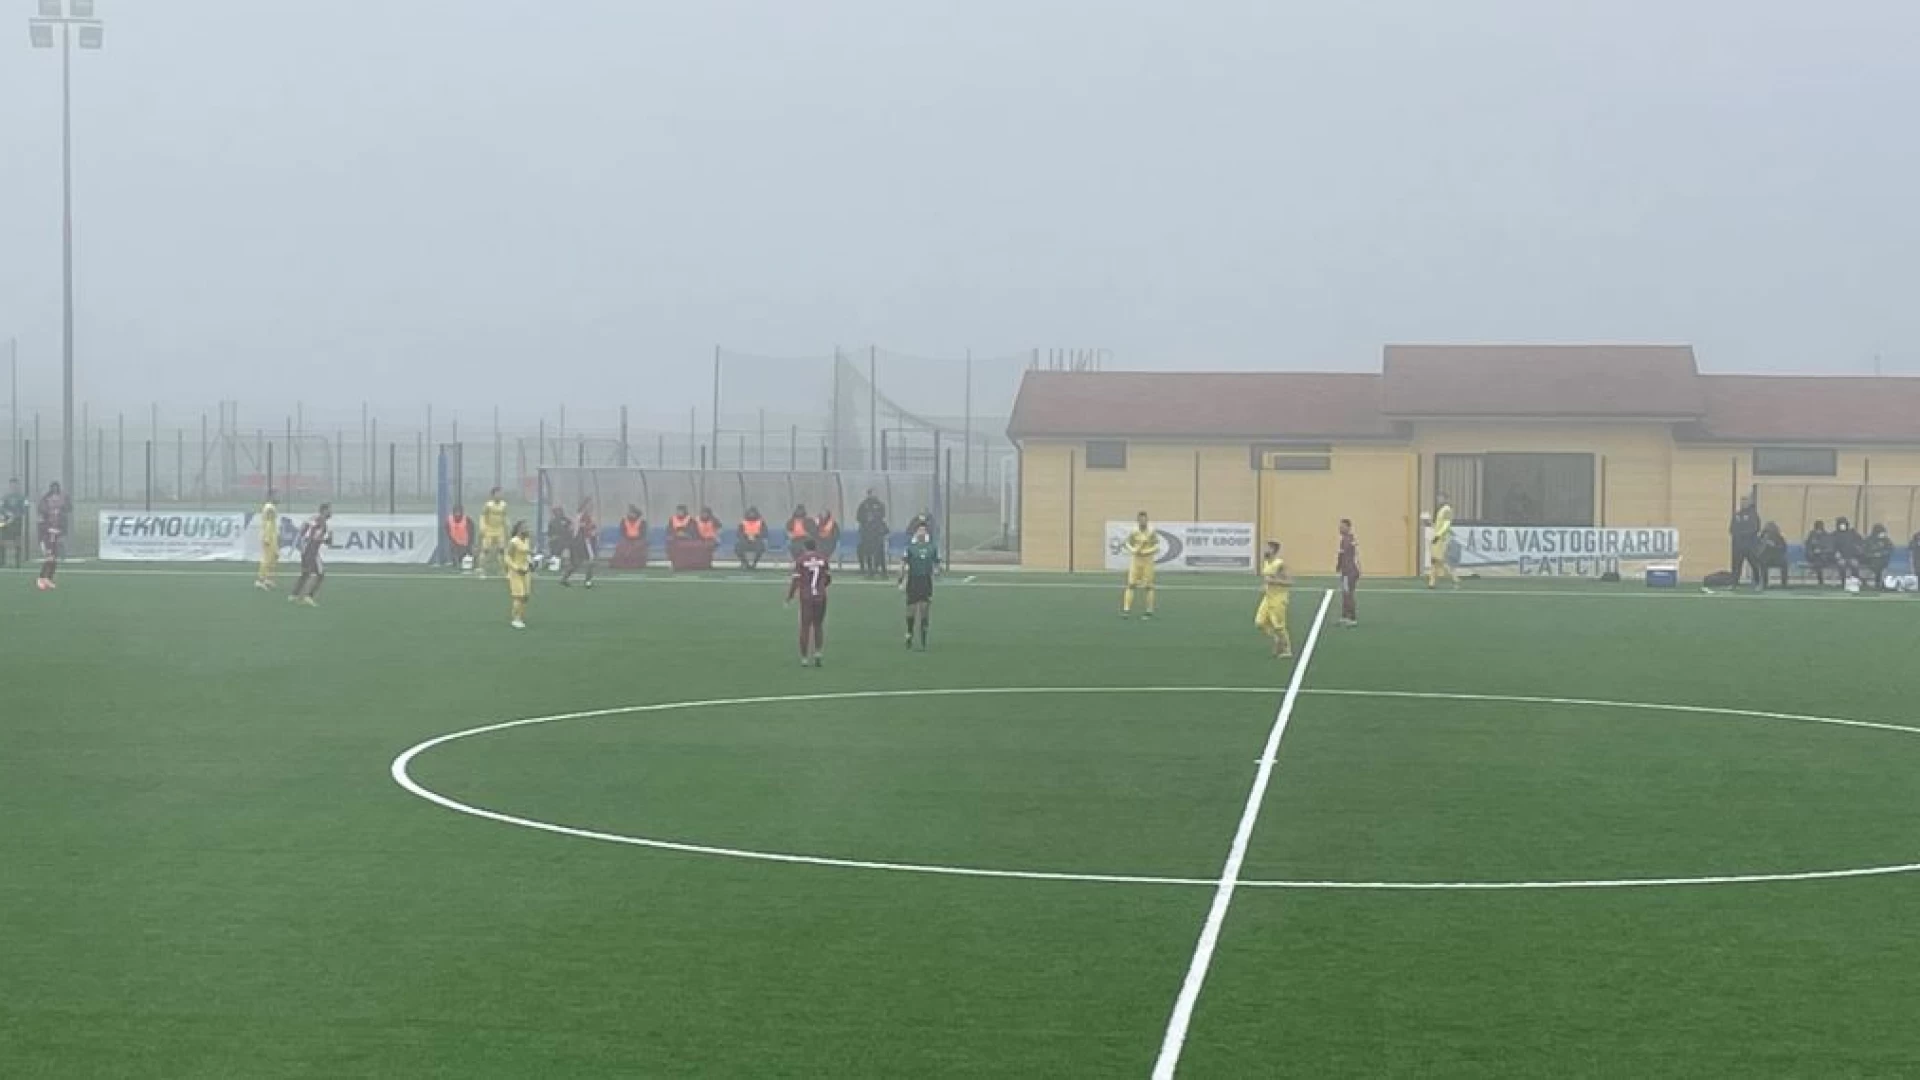 Serie D Girone F: nel recupero il Vastogirardi stende il Trastevere calcio per 3 a 1.